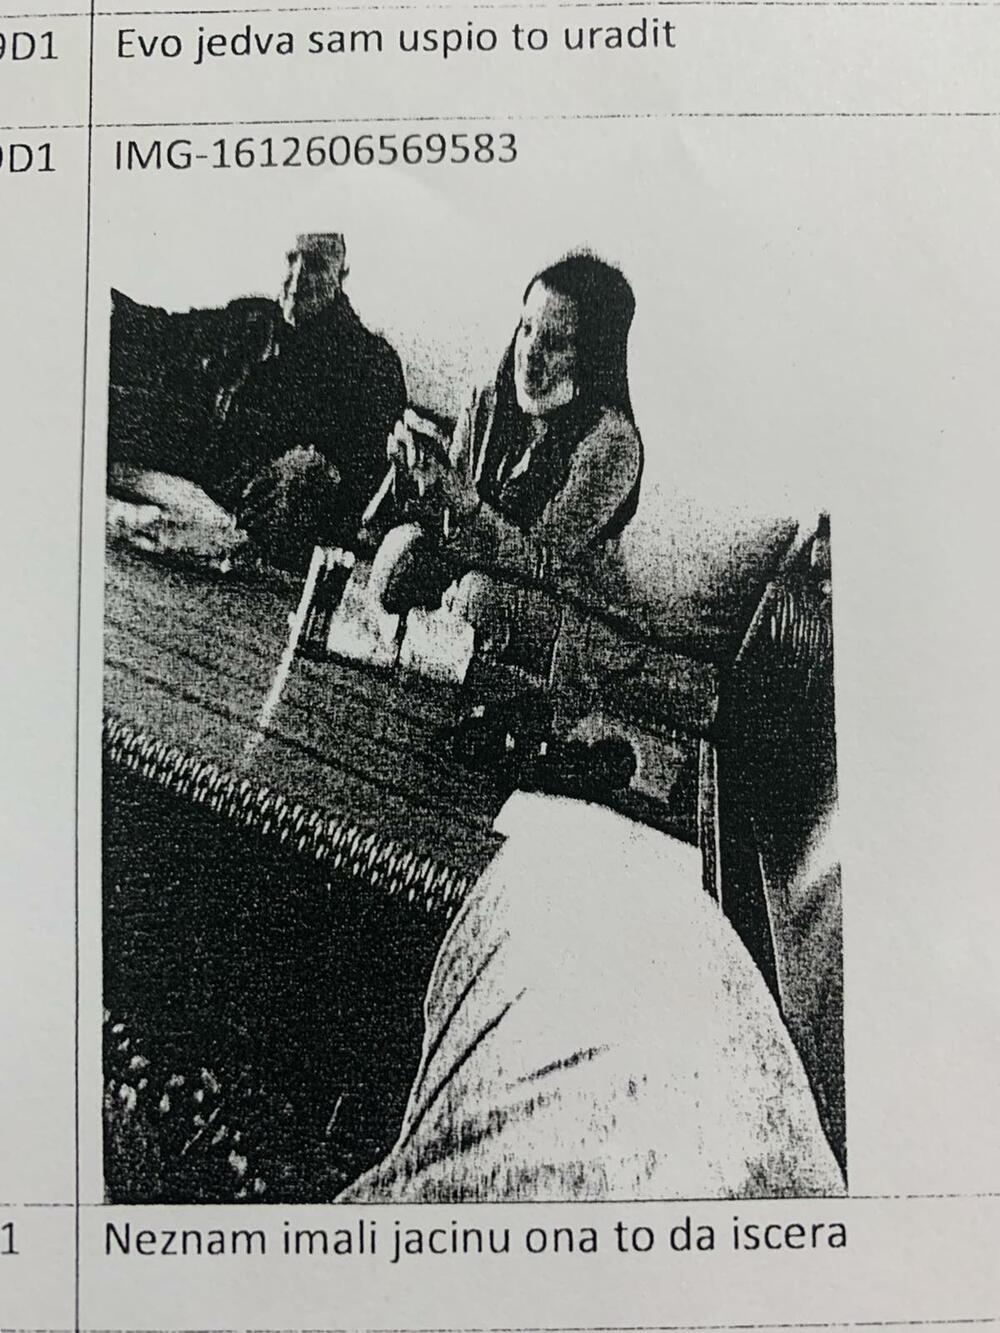 Jedan od članova klana fotografisao advokaticu tokom pregovora na Kosovu: Karadžić Perković